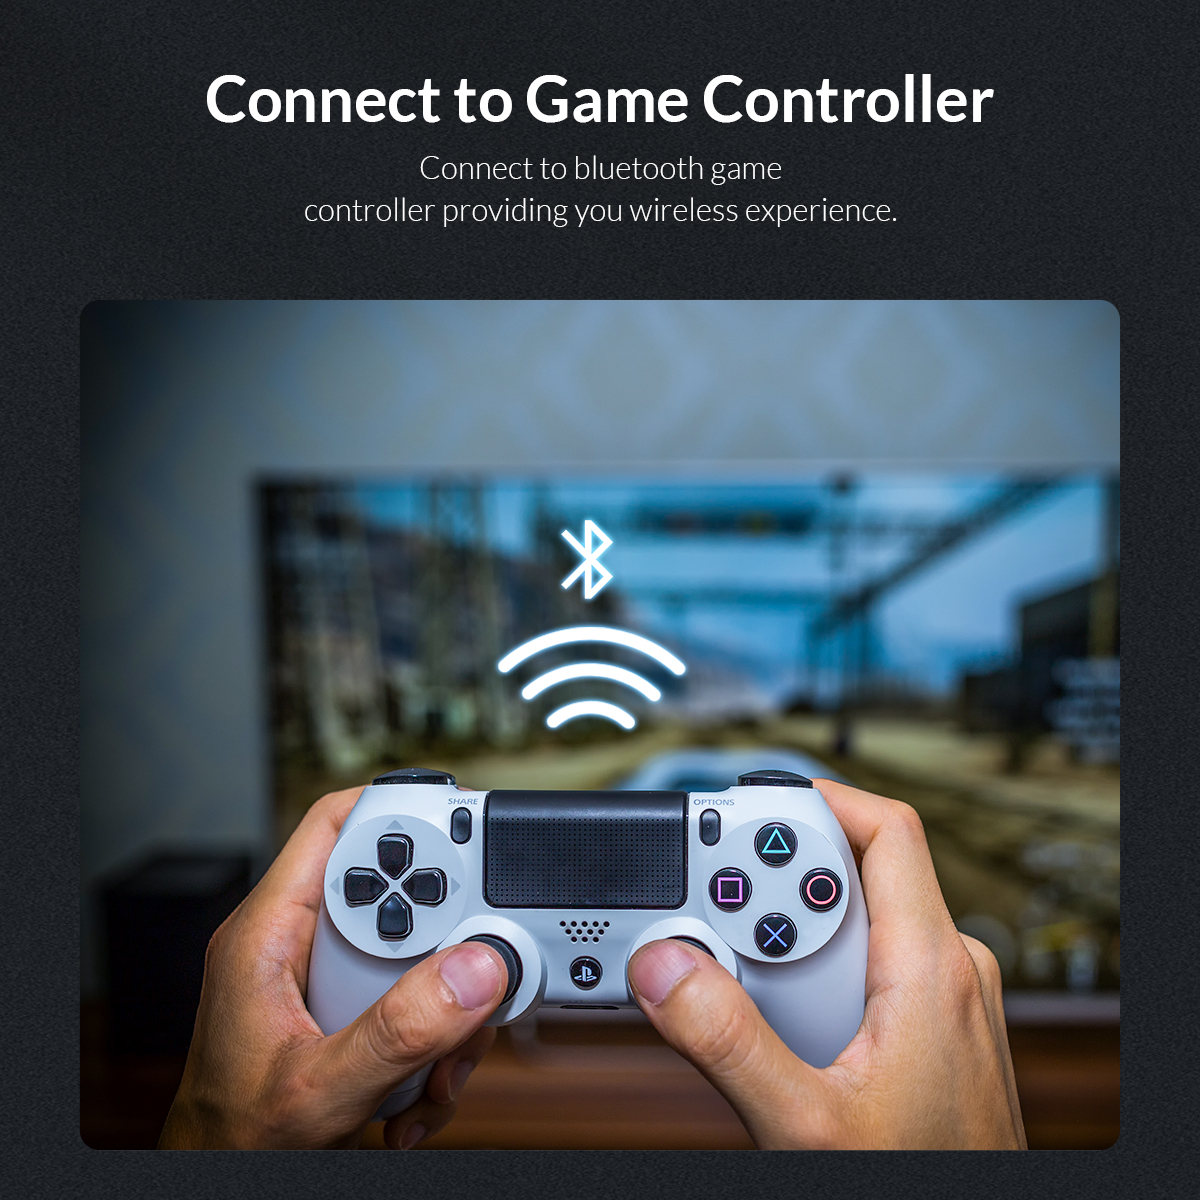 اتصال به کنترلرهای بازی